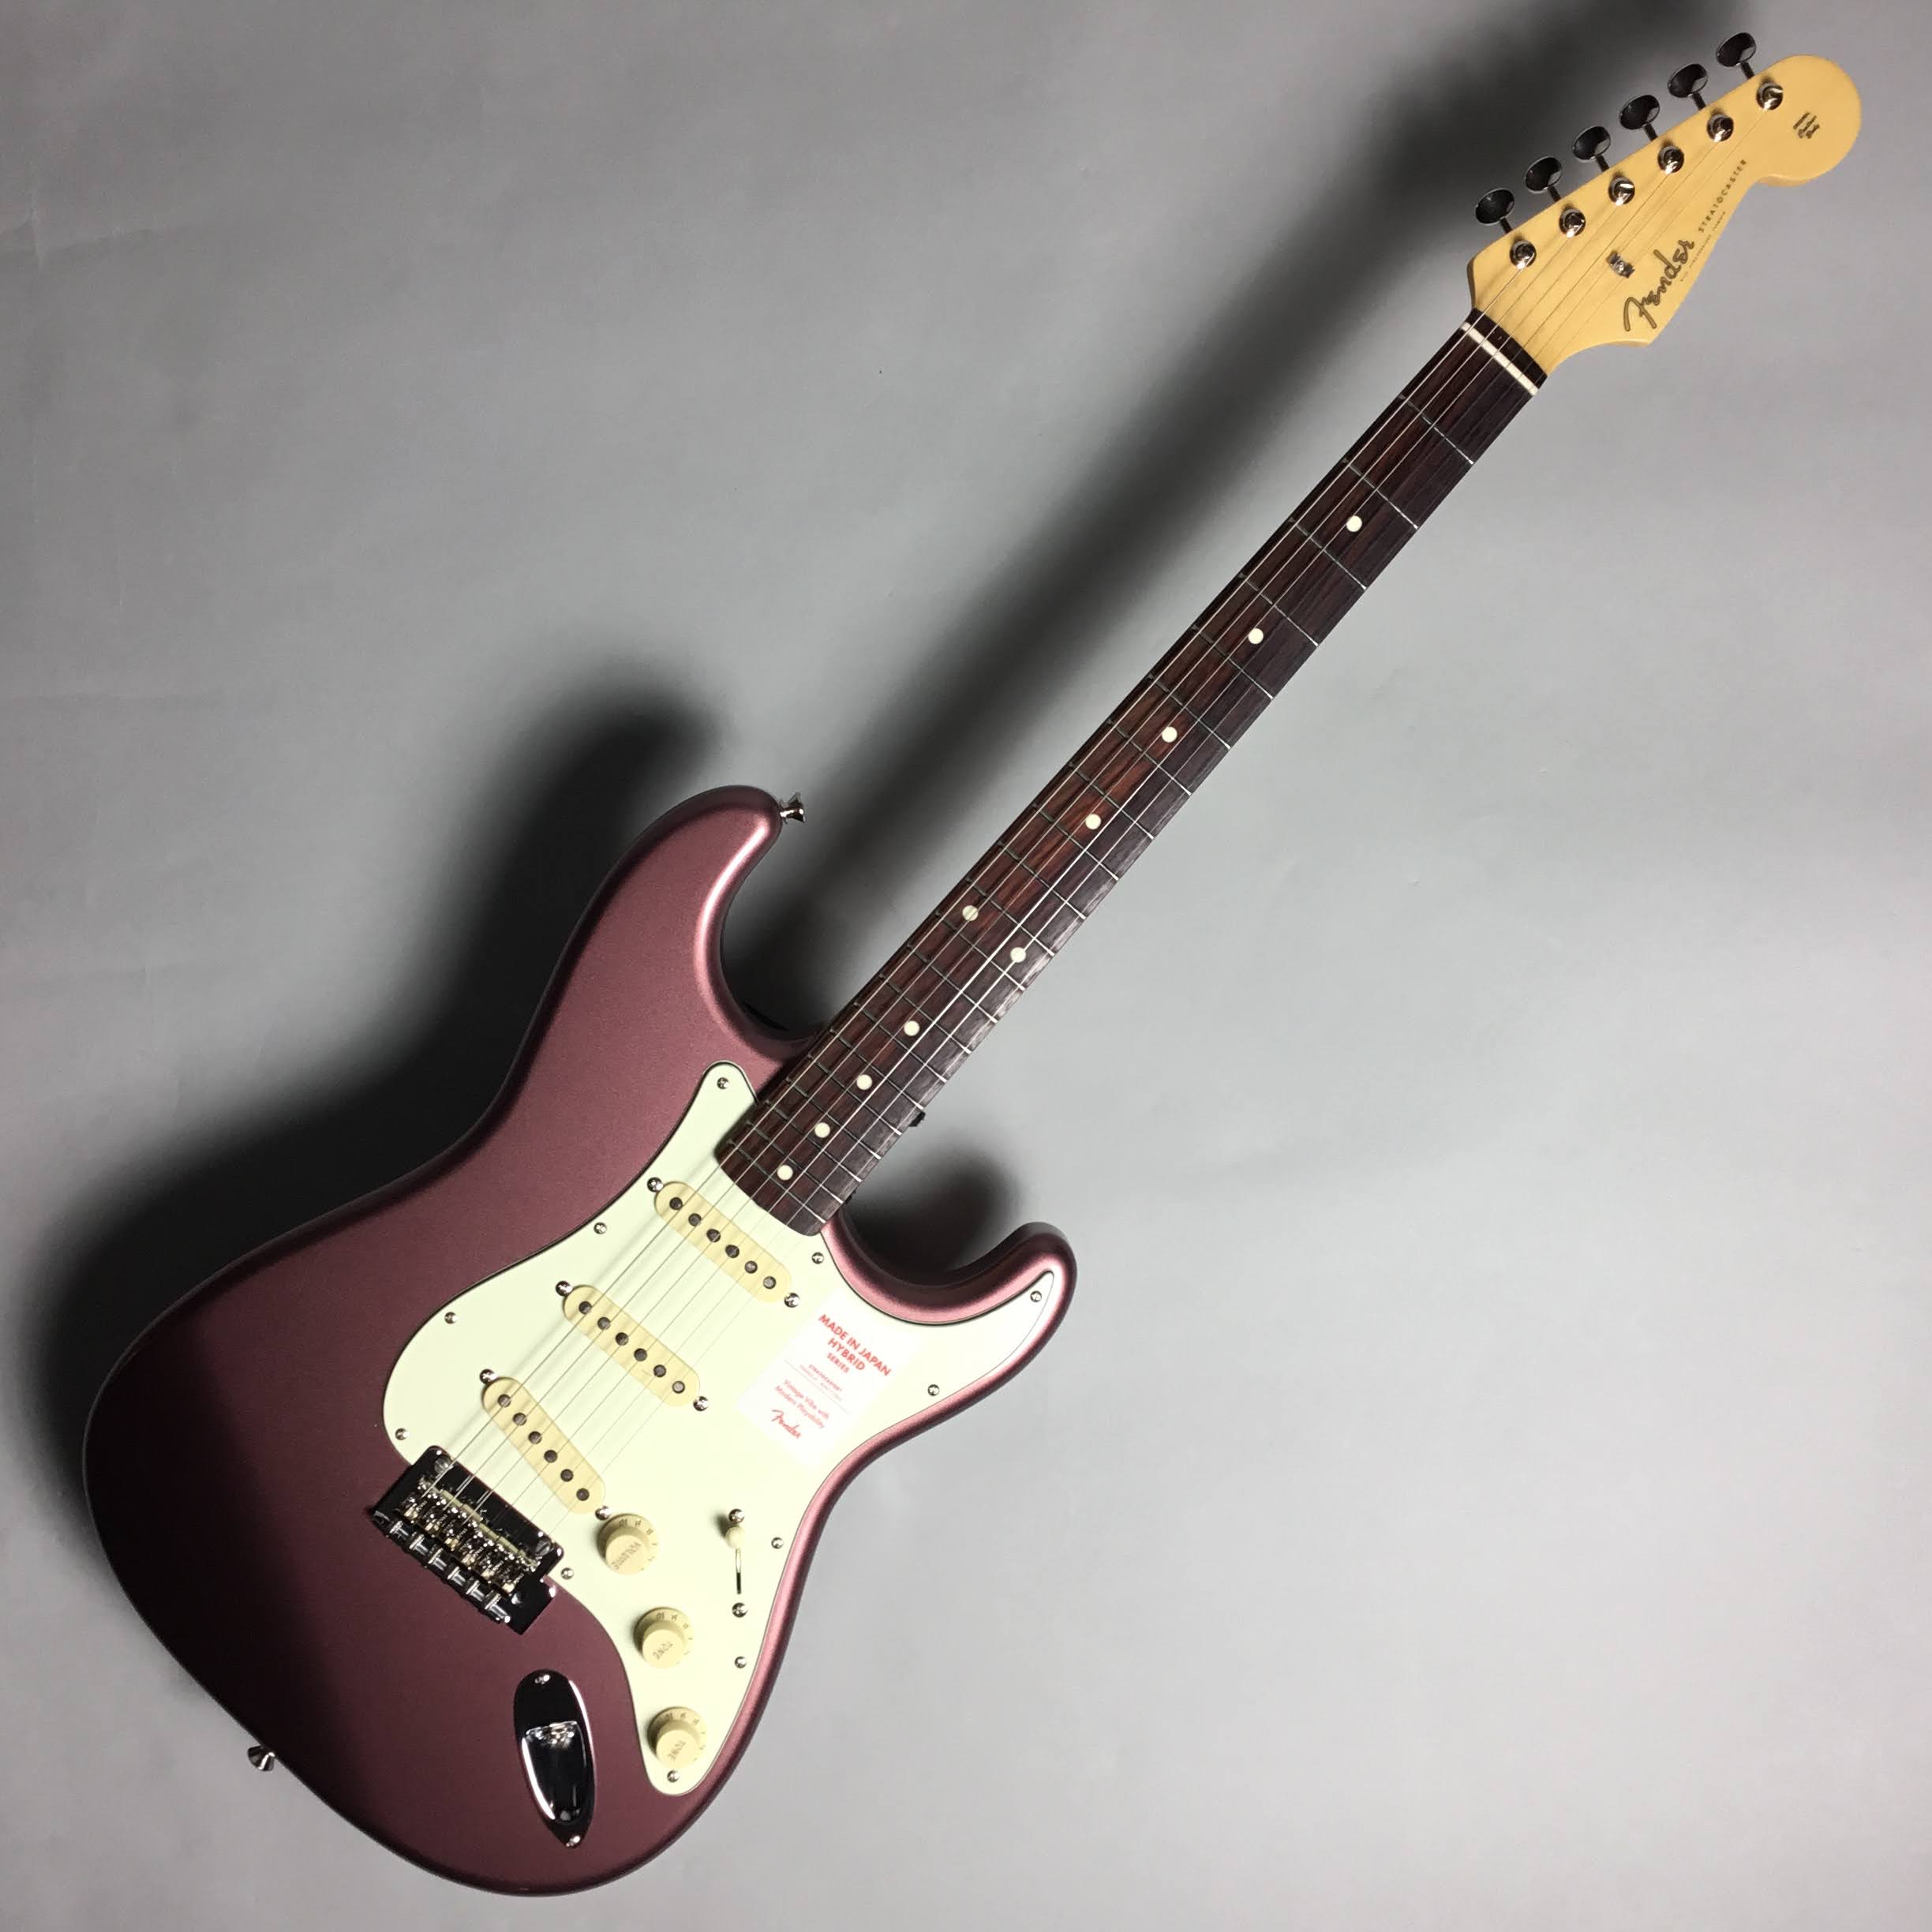 【新着入荷情報】Fender hybrid Stratocaster